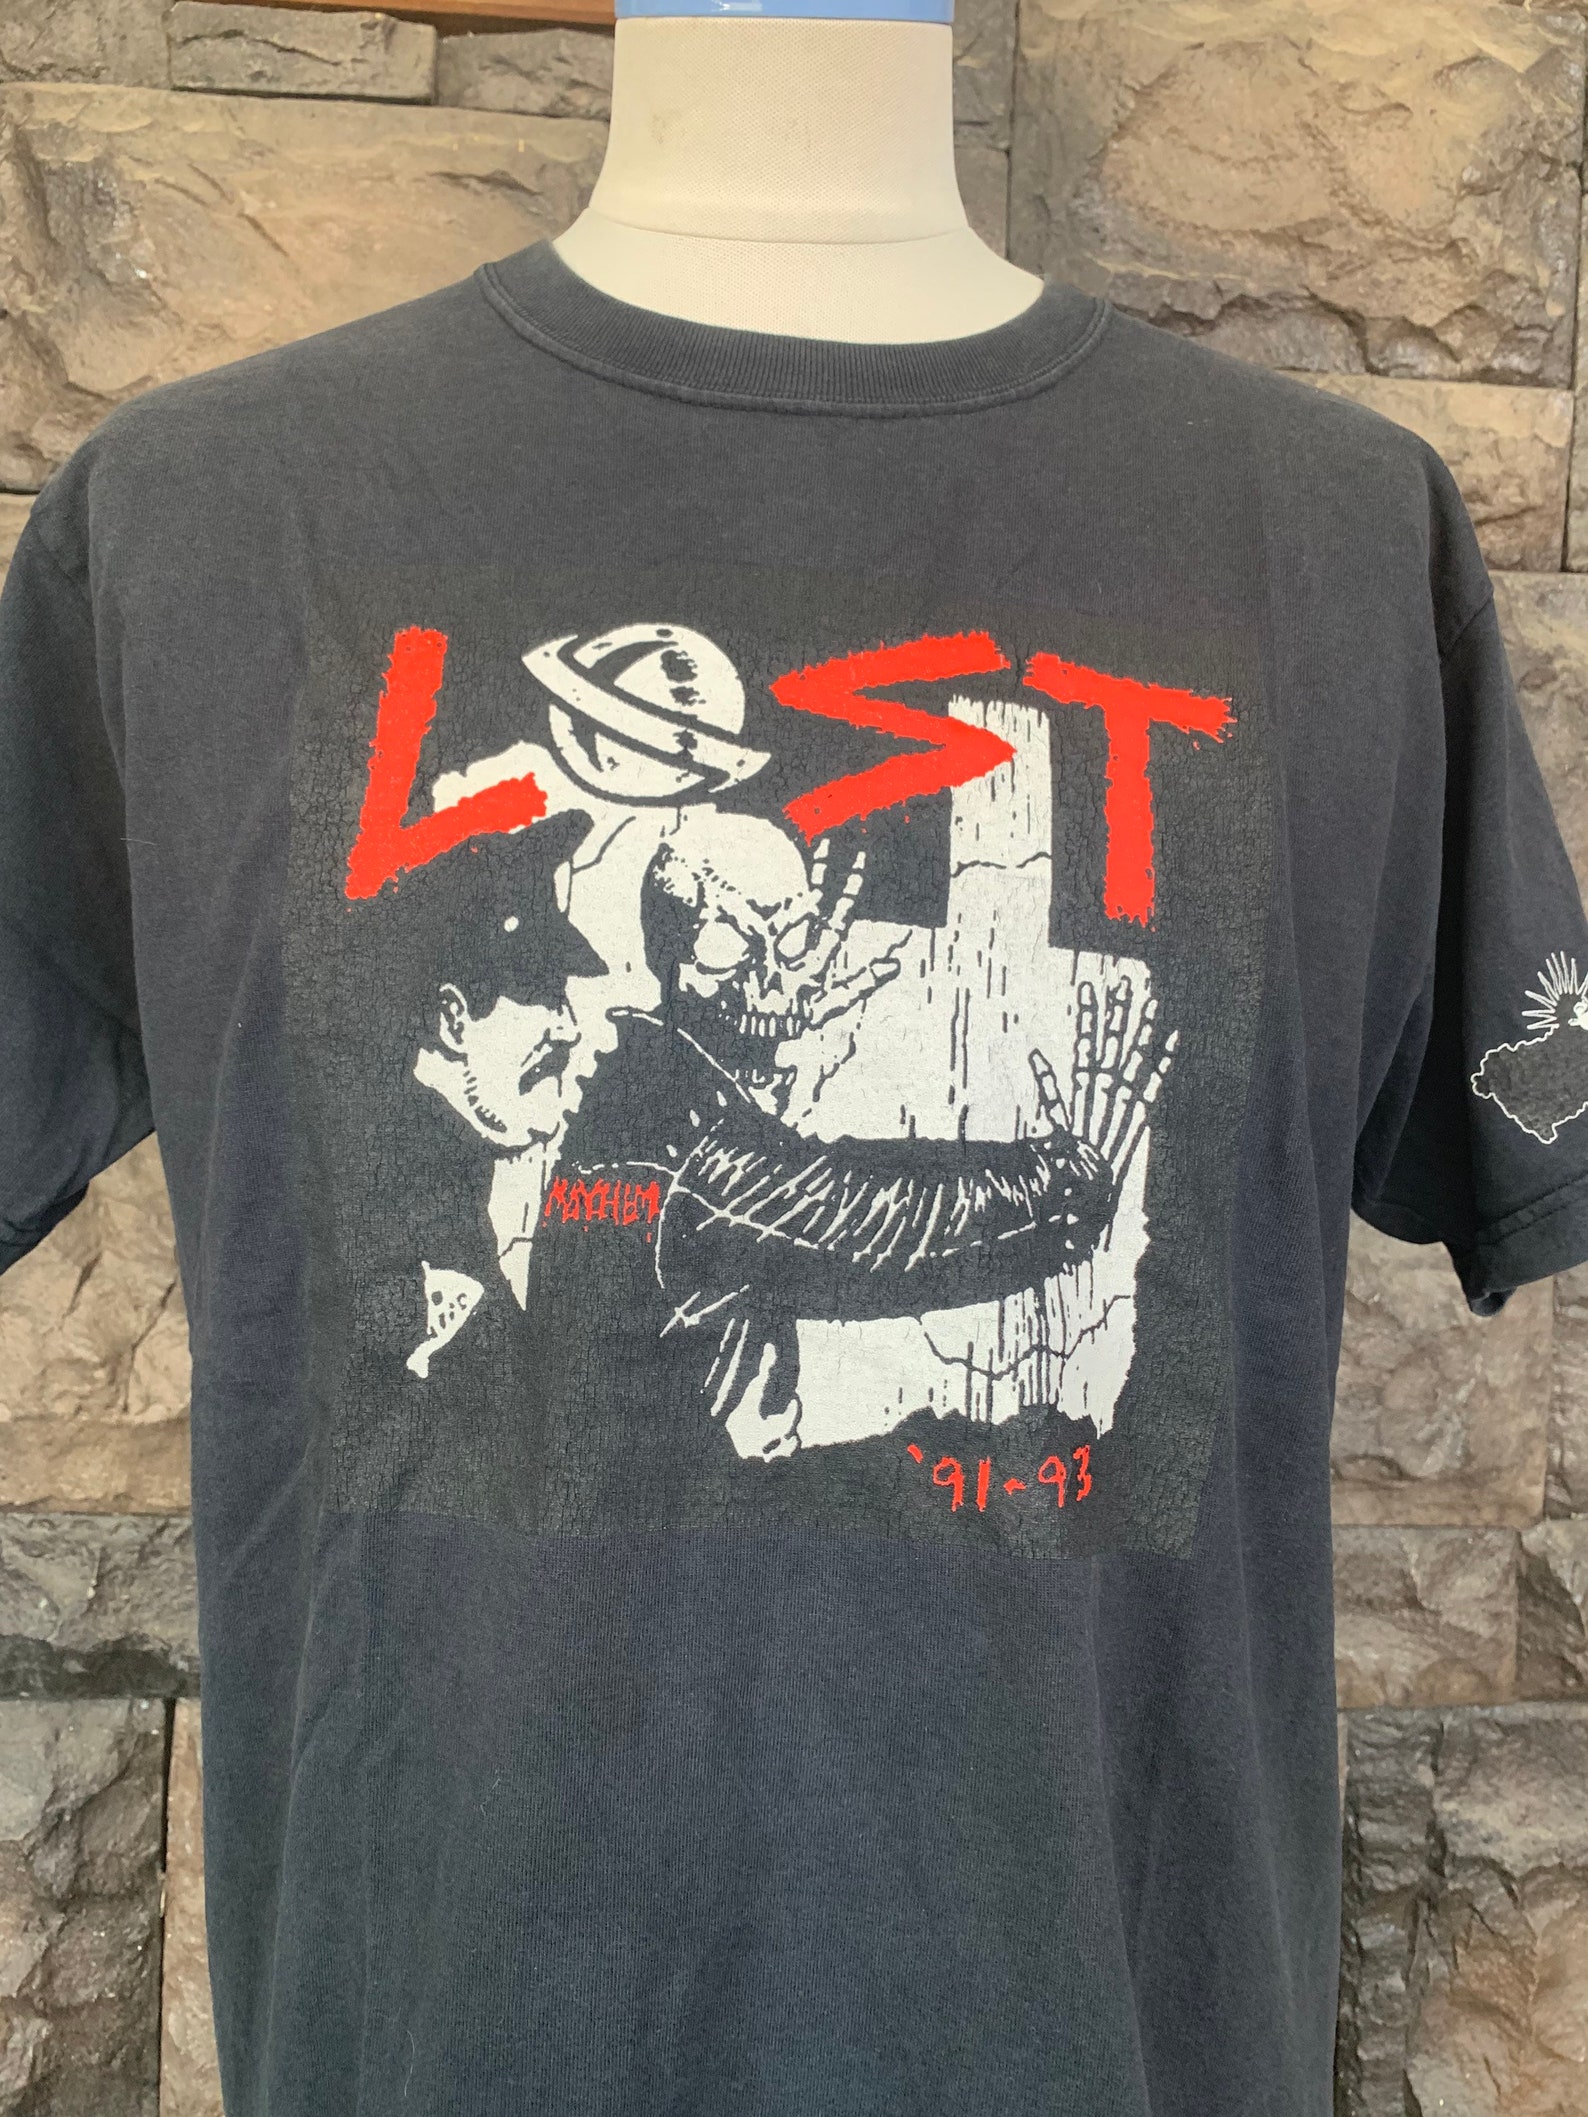 Vintage Lost Enterprises Skateboard T shirt | Etsy